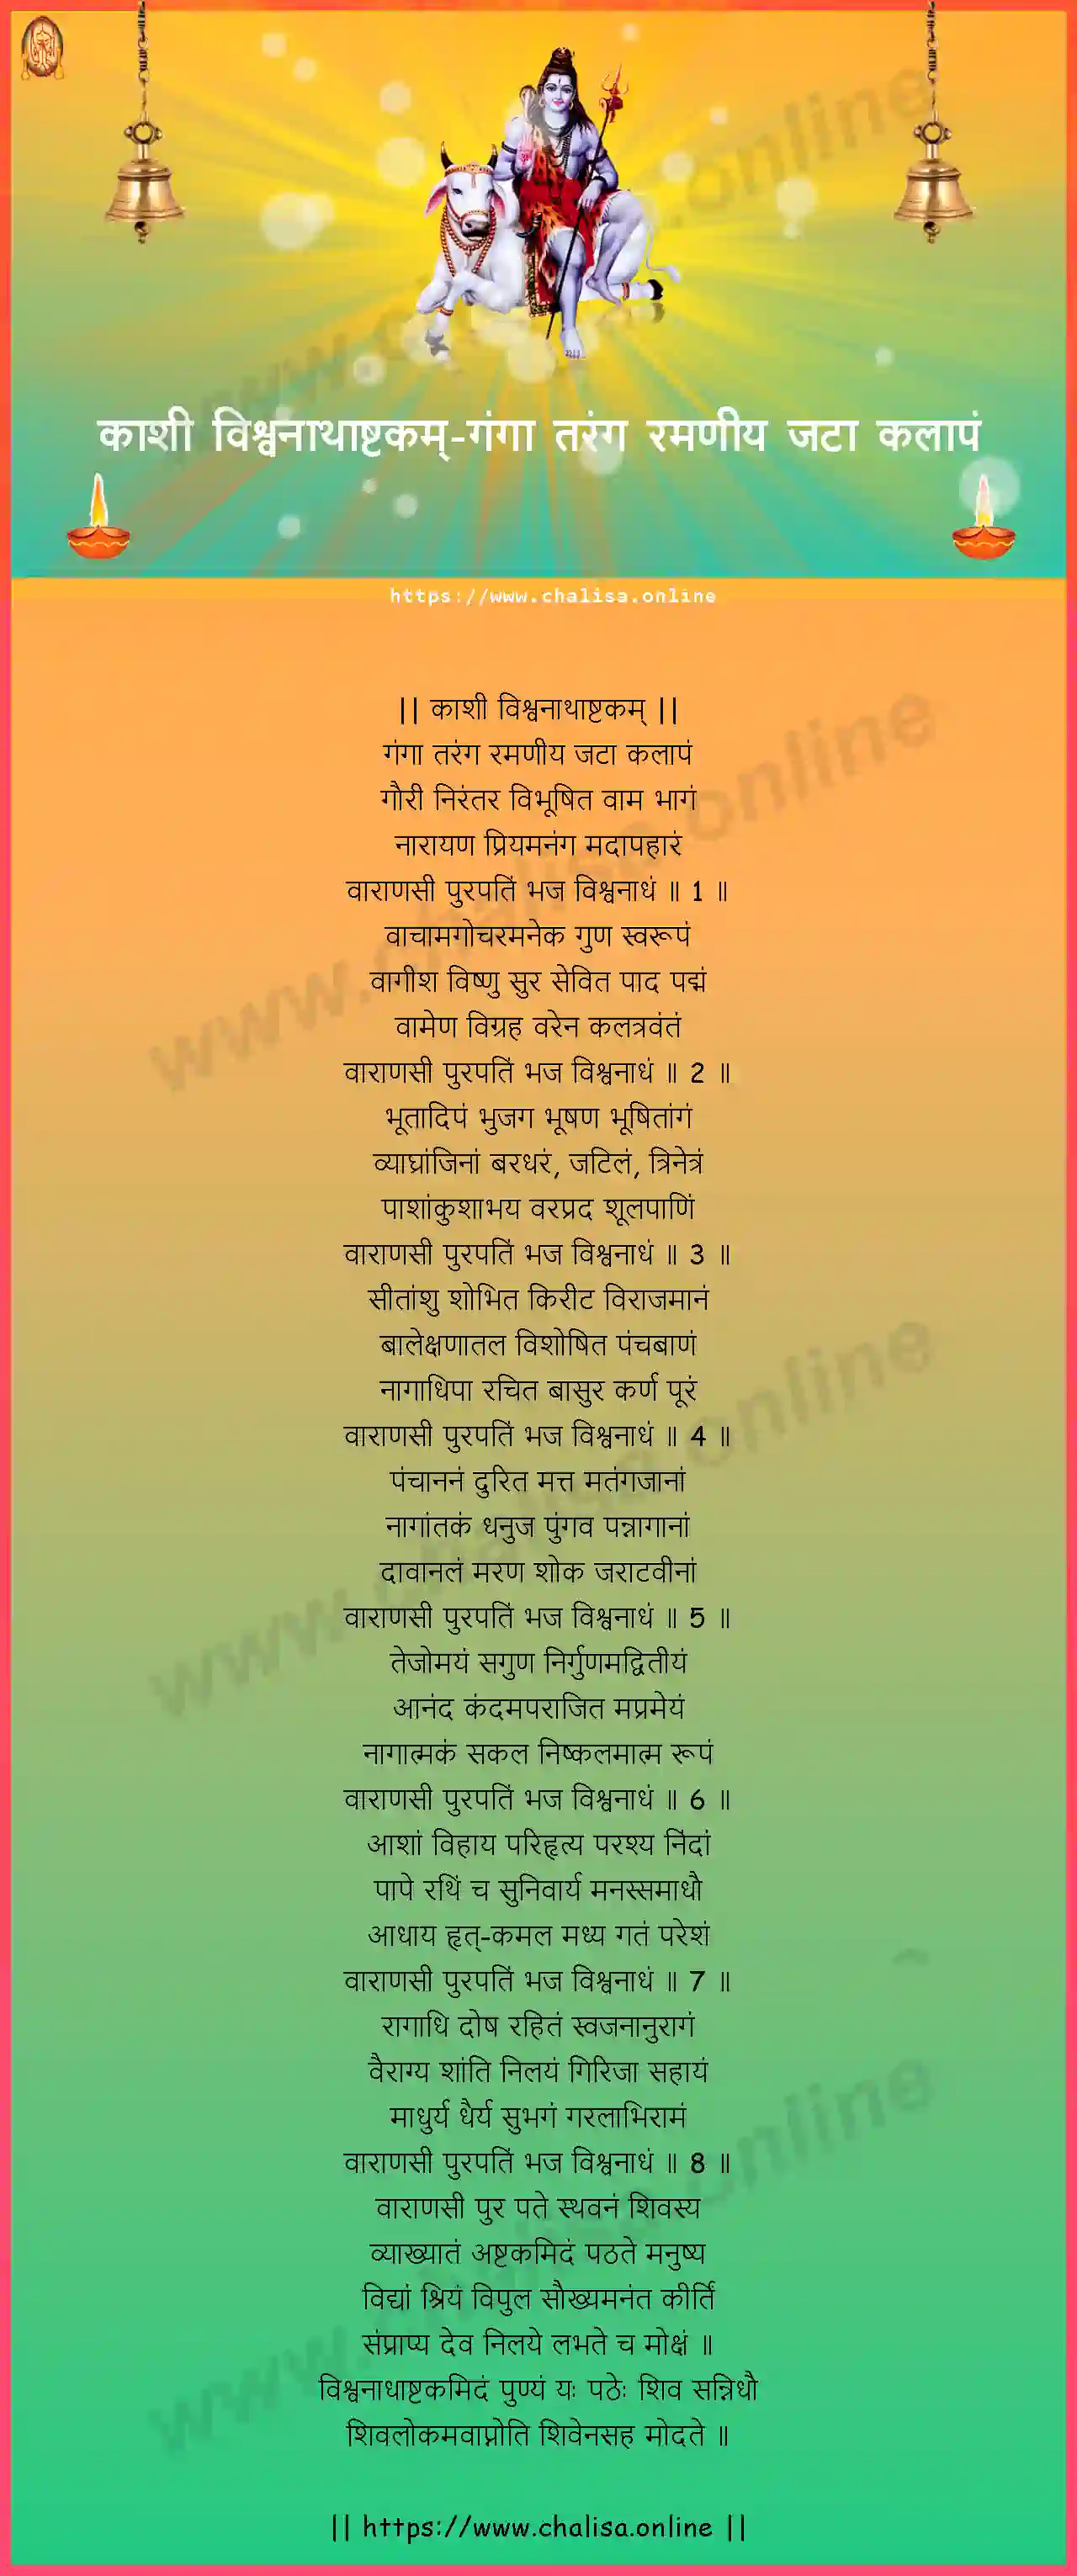 ganga-taranga-kasi-vishwanathashtakam-nepali-nepali-lyrics-download